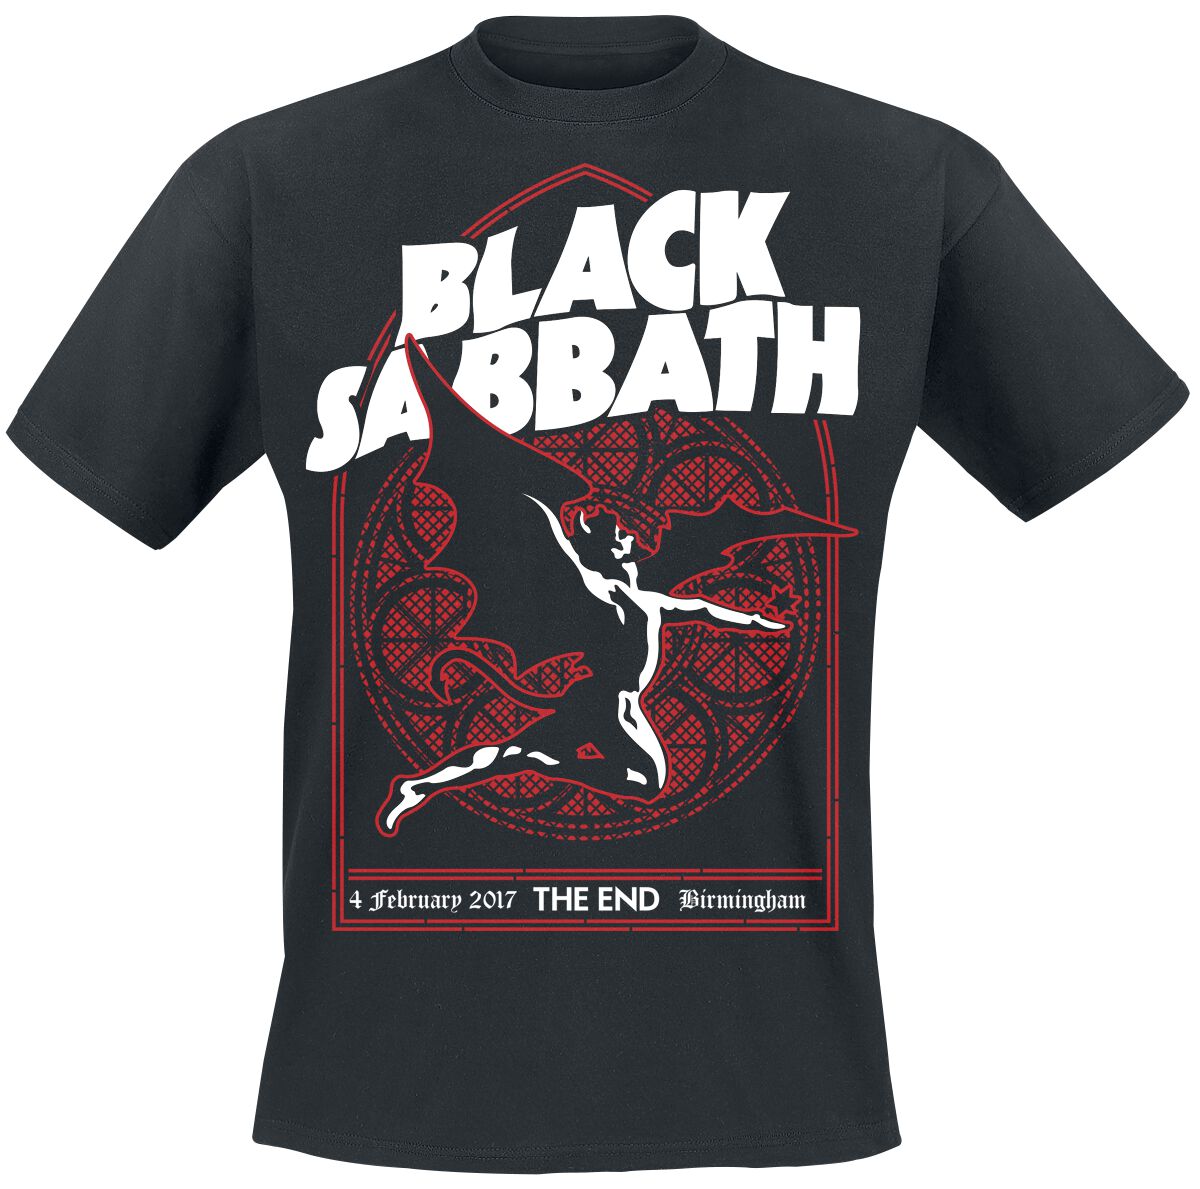 Black Sabbath T-Shirt - The End Church Window - M bis XXL - für Männer - Größe XL - schwarz  - Lizenziertes Merchandise!